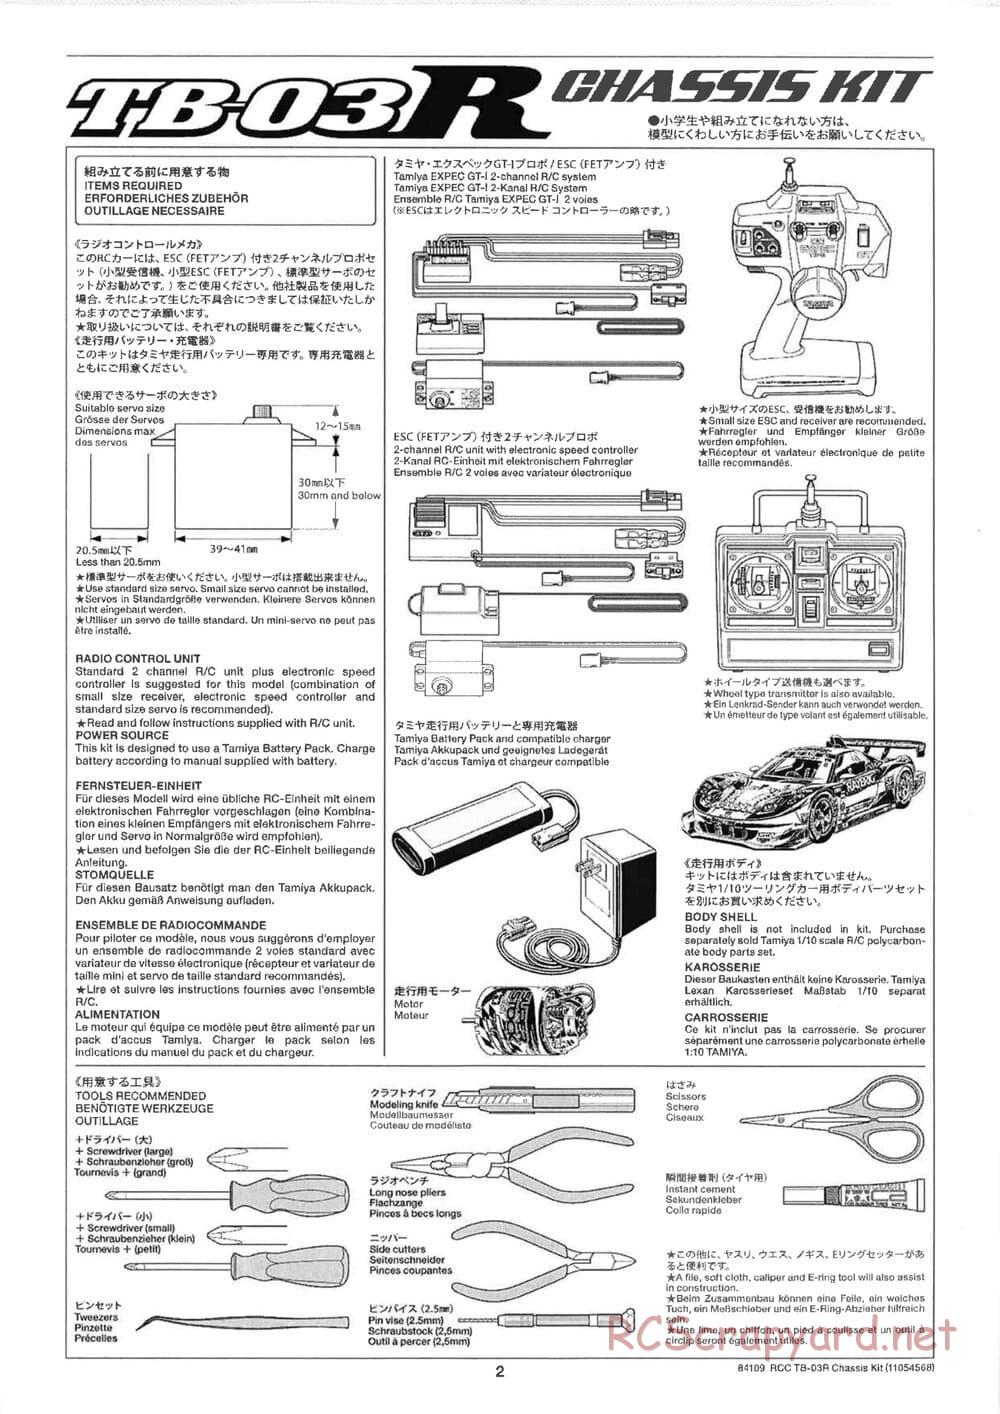 Tamiya - TB-03R Chassis - Manual - Page 2